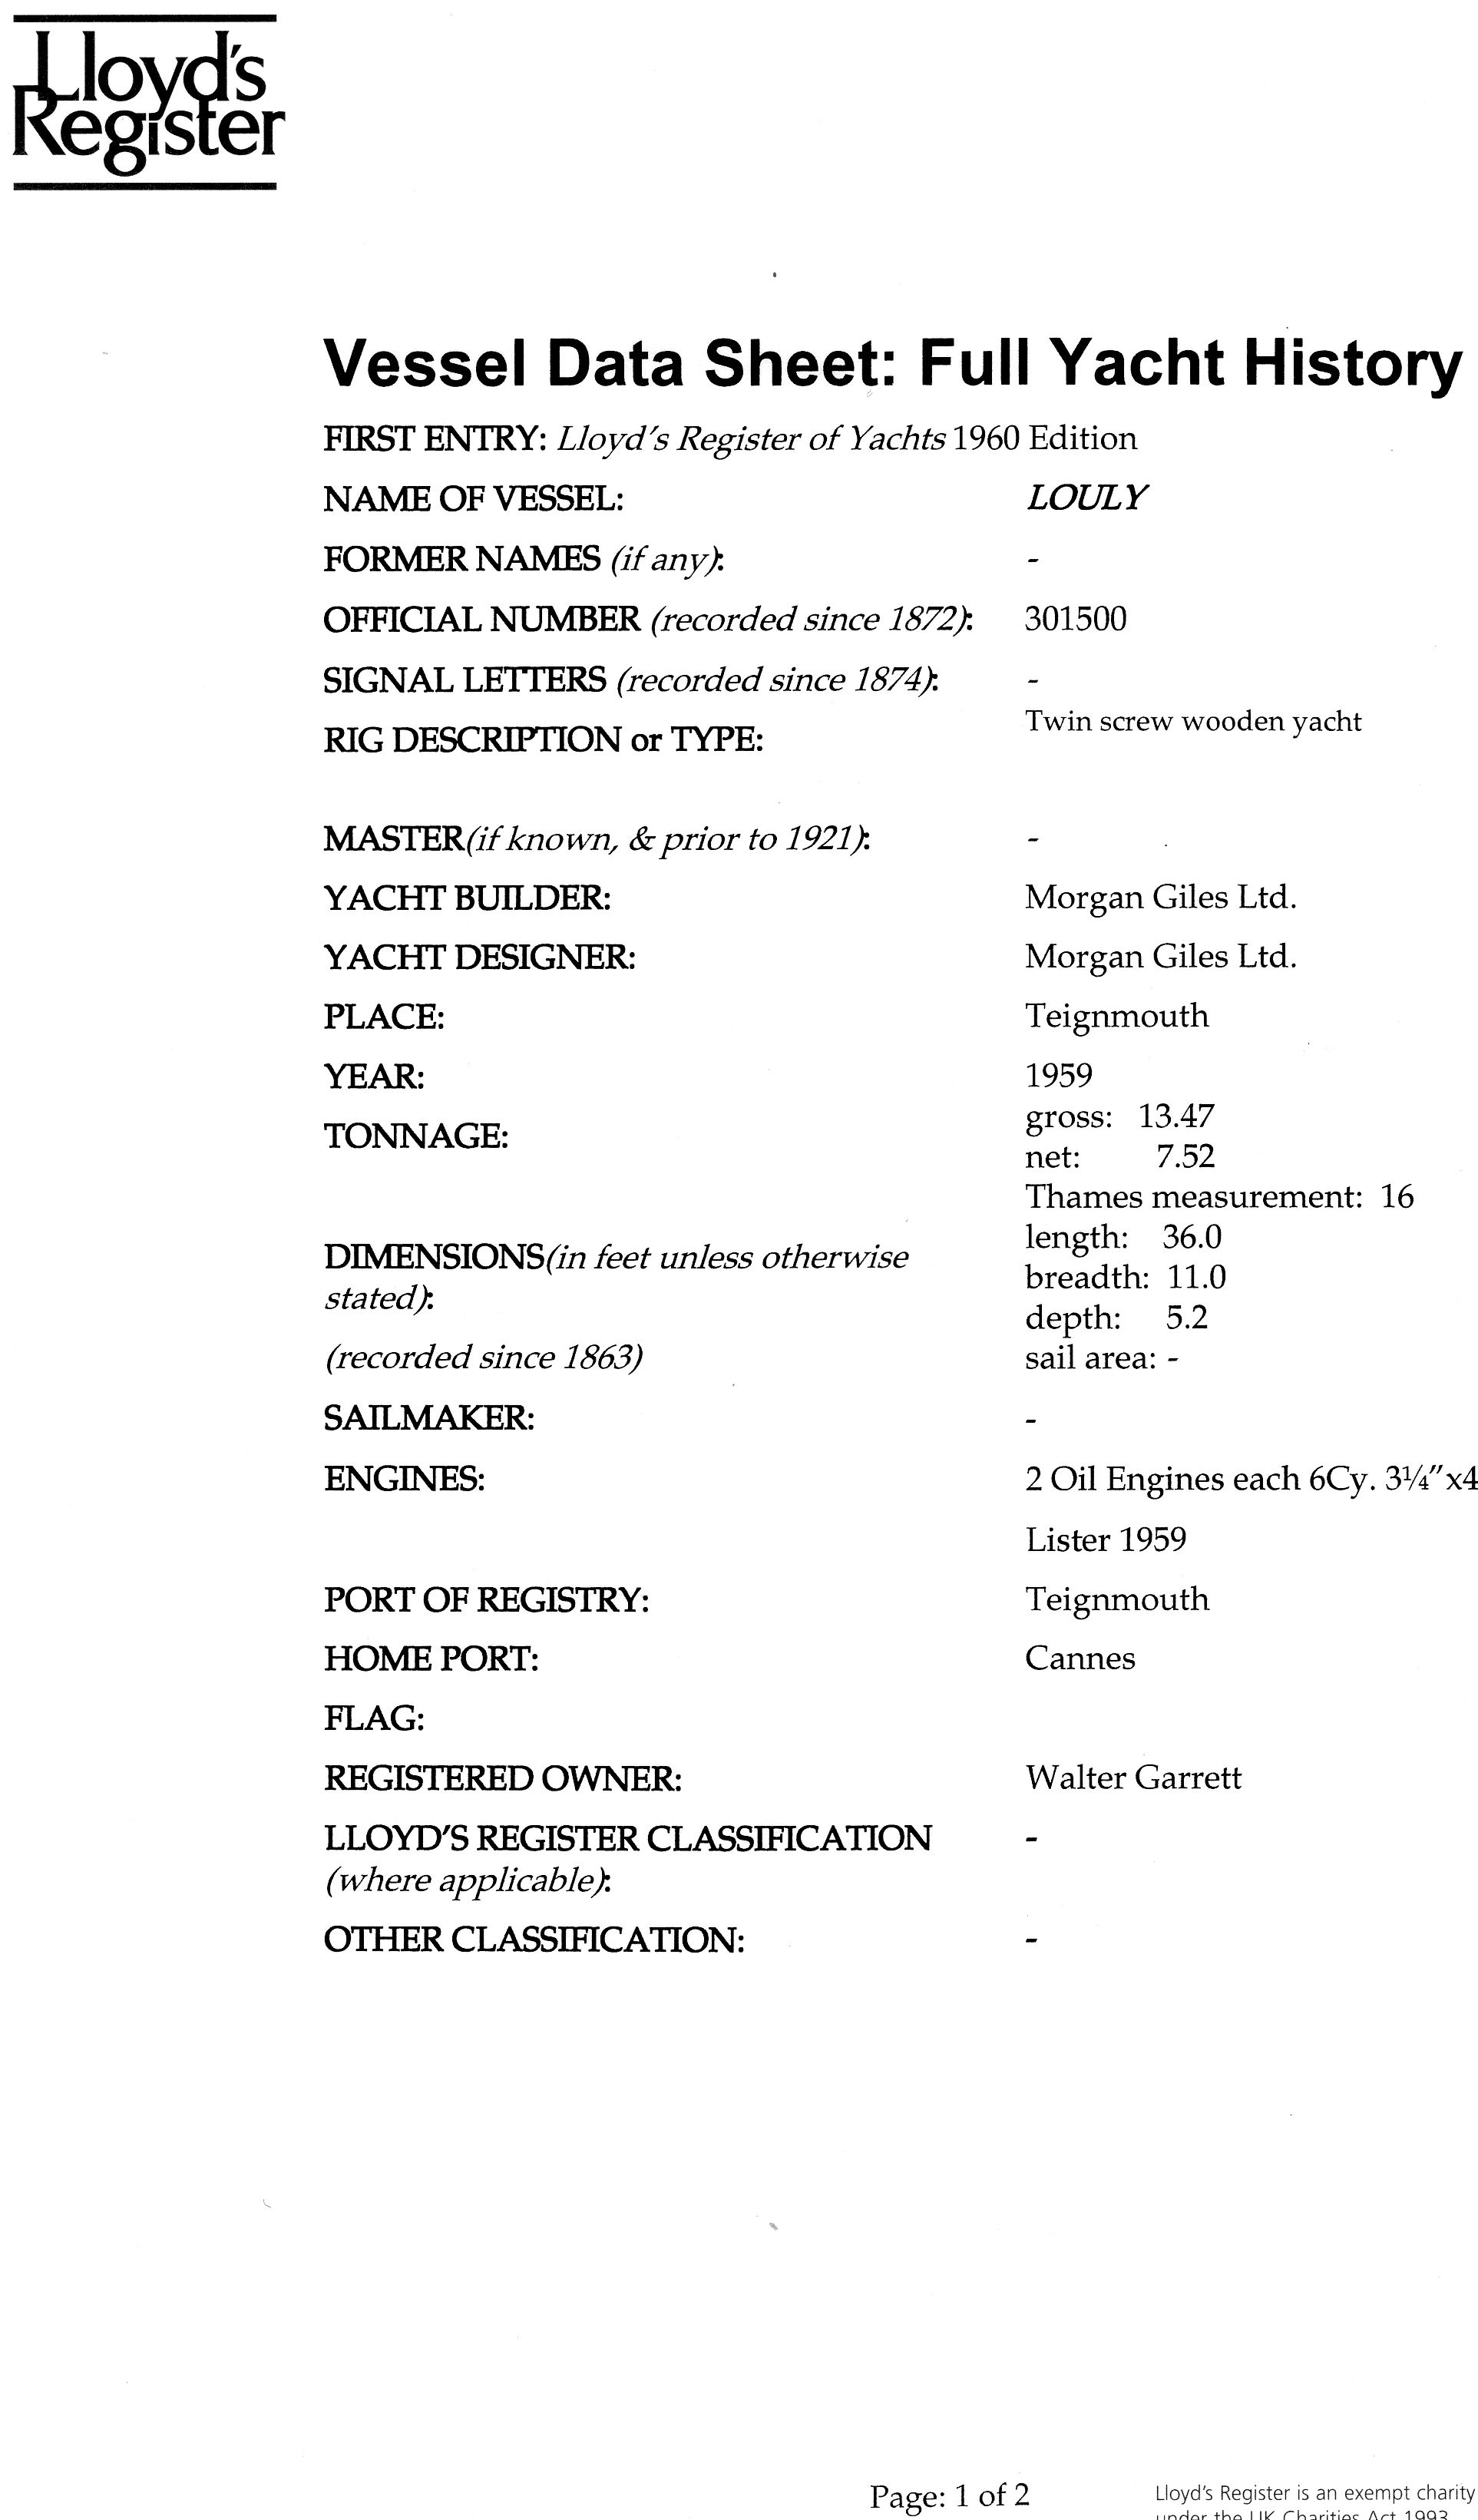 Monaco - Louly - Lloyd's Register Vessel Data Sheet page 1